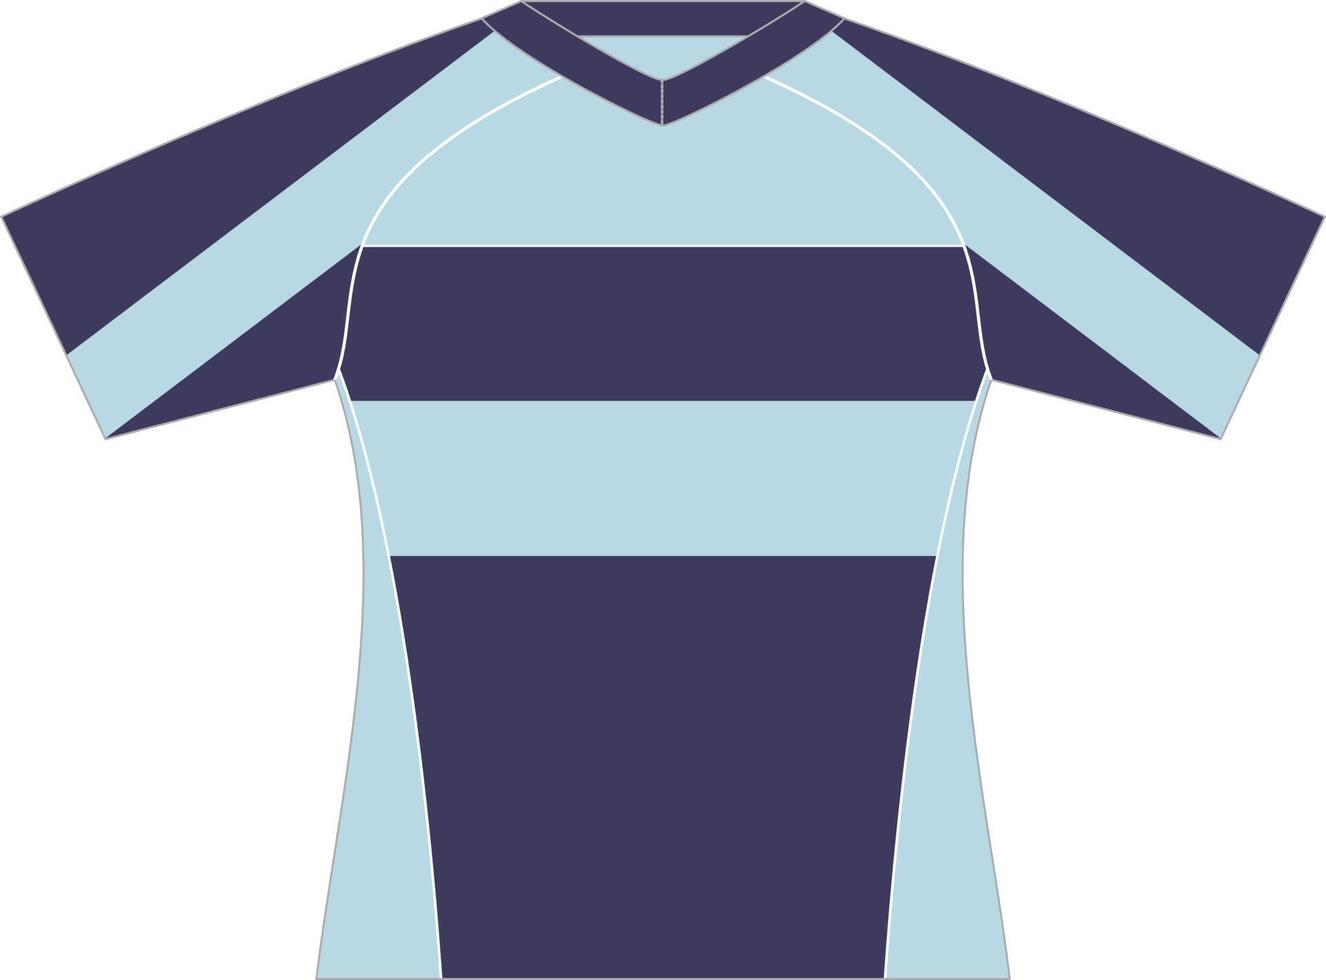 modelo de design esportivo de camiseta para camisa de futebol. uniforme esportivo em vista frontal. camiseta simulada para clube esportivo. ilustração vetorial vetor